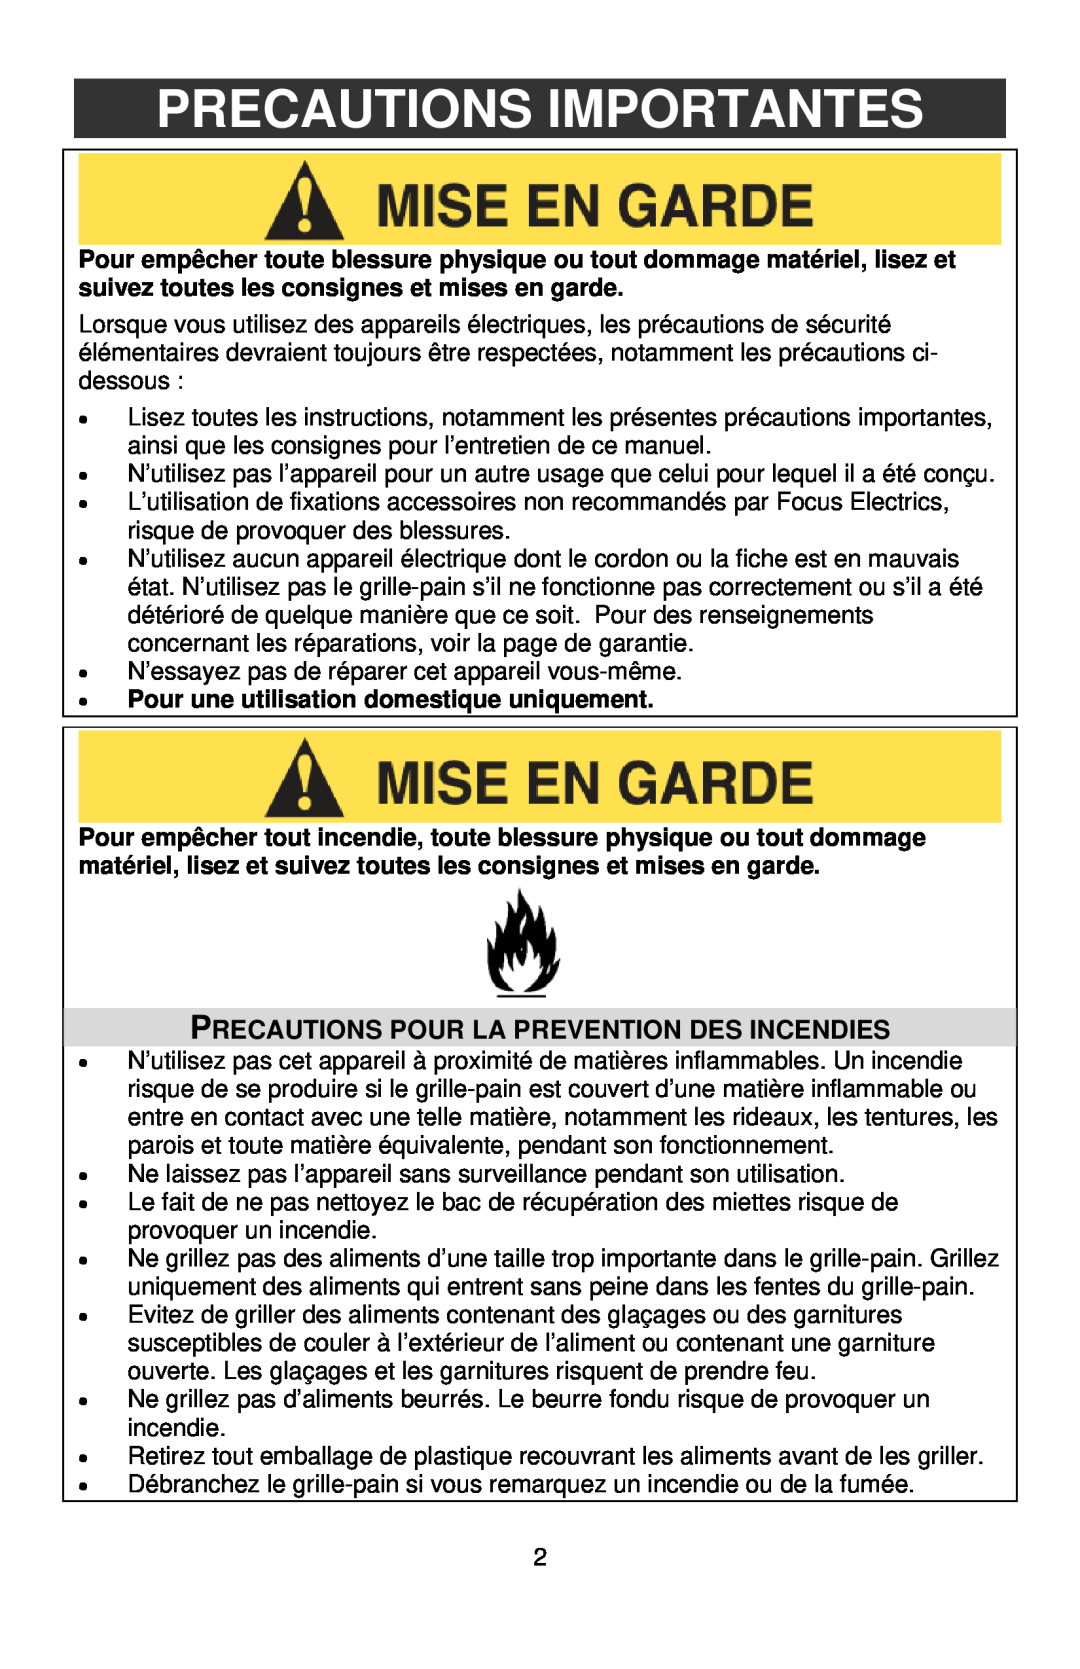 West Bend Studio Toaster instruction manual Precautions Importantes, Precautions Pour La Prevention Des Incendies 